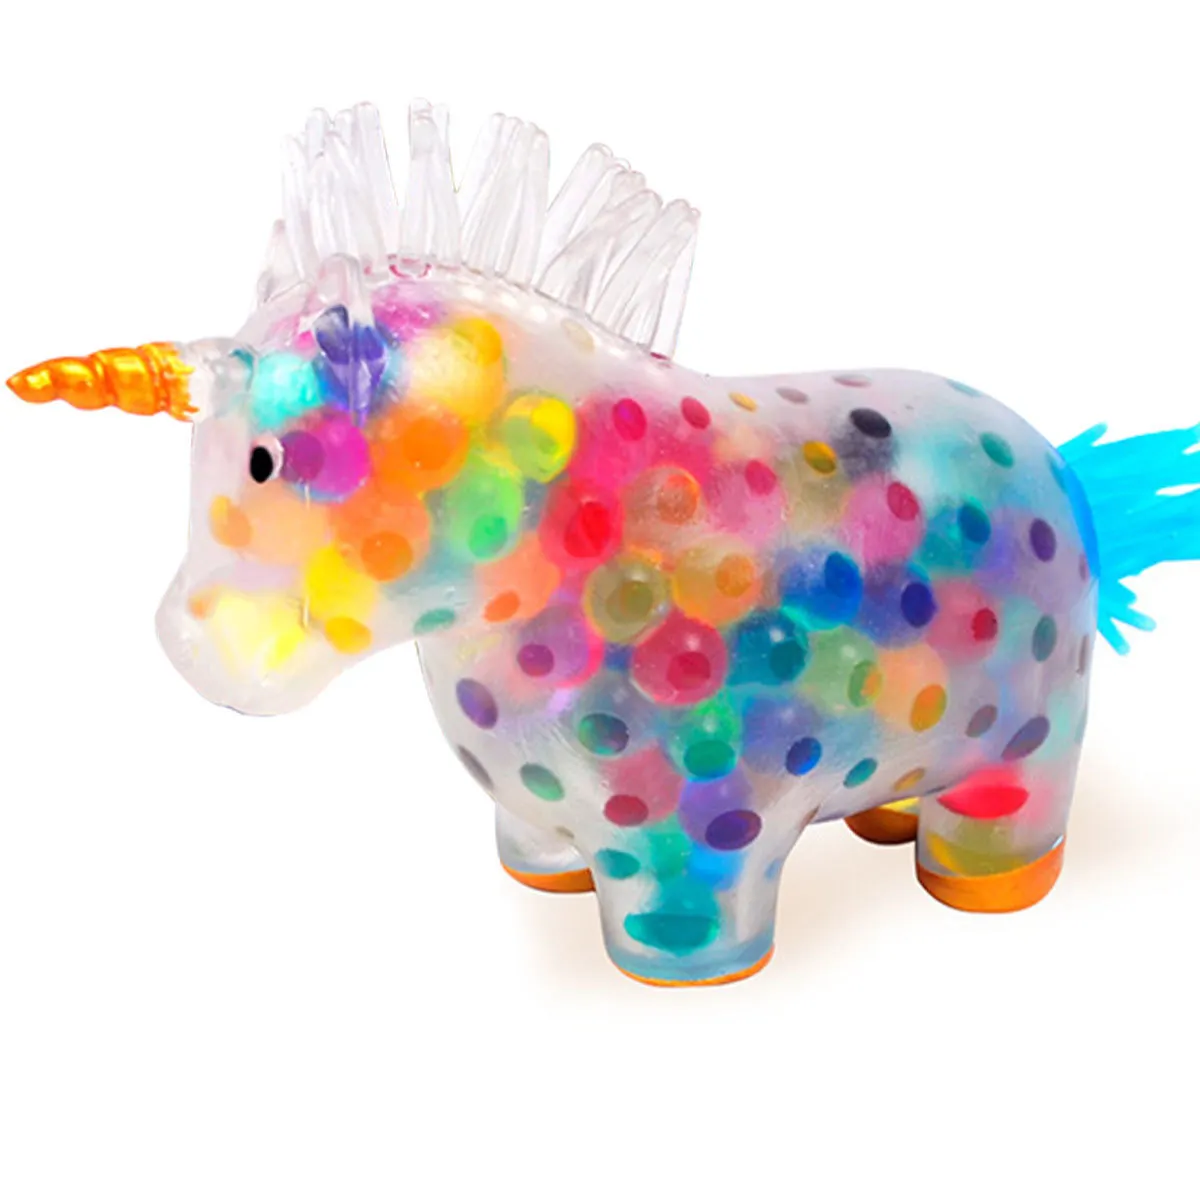 DECOMPRESSIONE giocattolo Unicorn Stress Balls Squeeze S Relief Fidget Squishy Kawaii Ball per adulto Gift per bambini Funny 221019